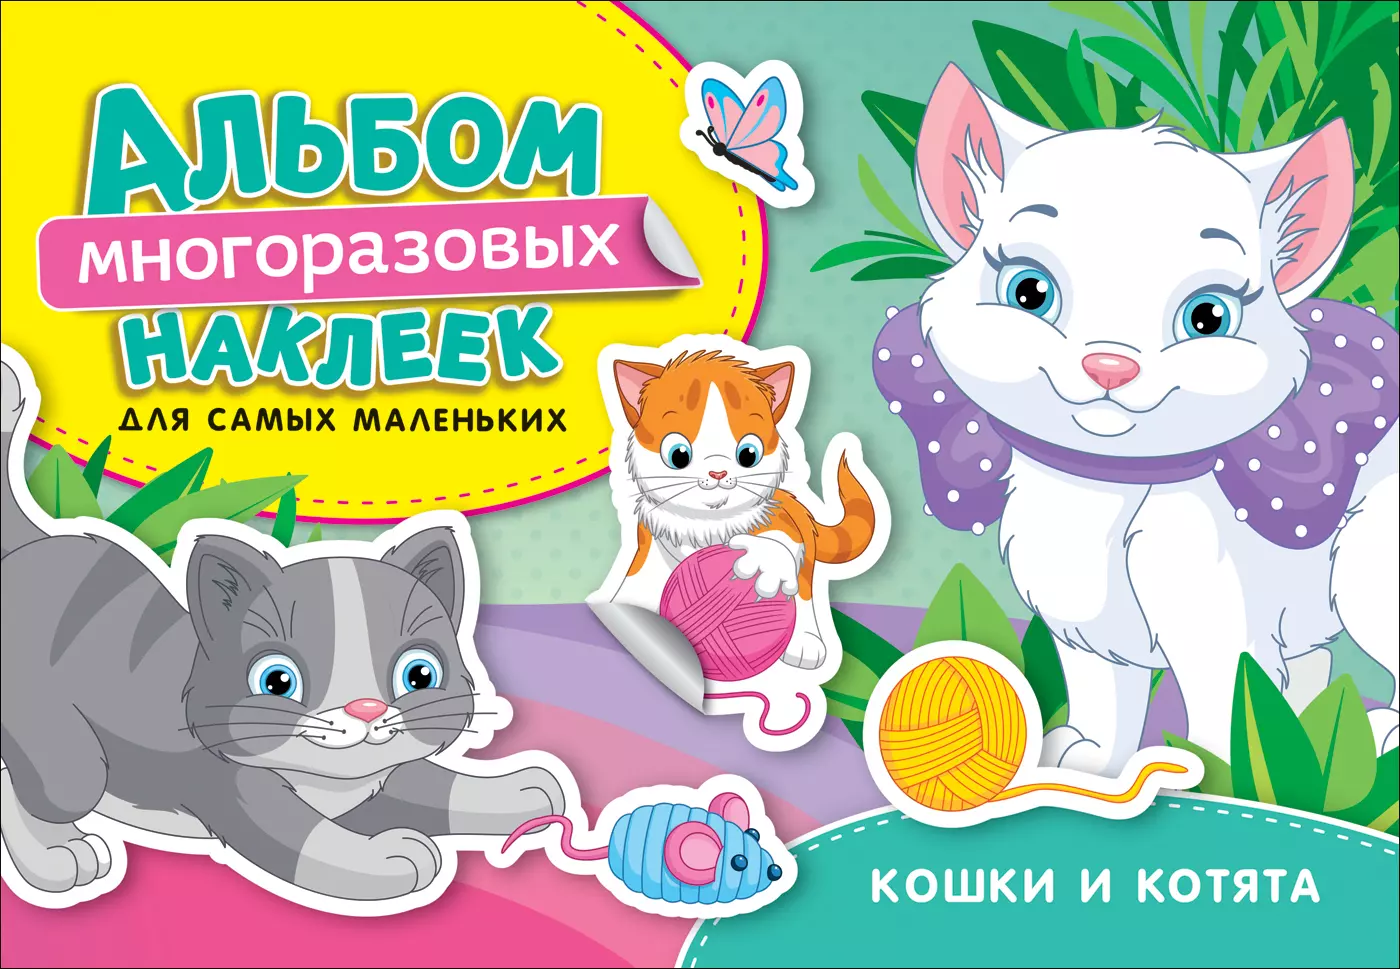 Котятова Наталья Игоревна - Кошки и котята. Альбом многоразовых наклеек для самых маленьких